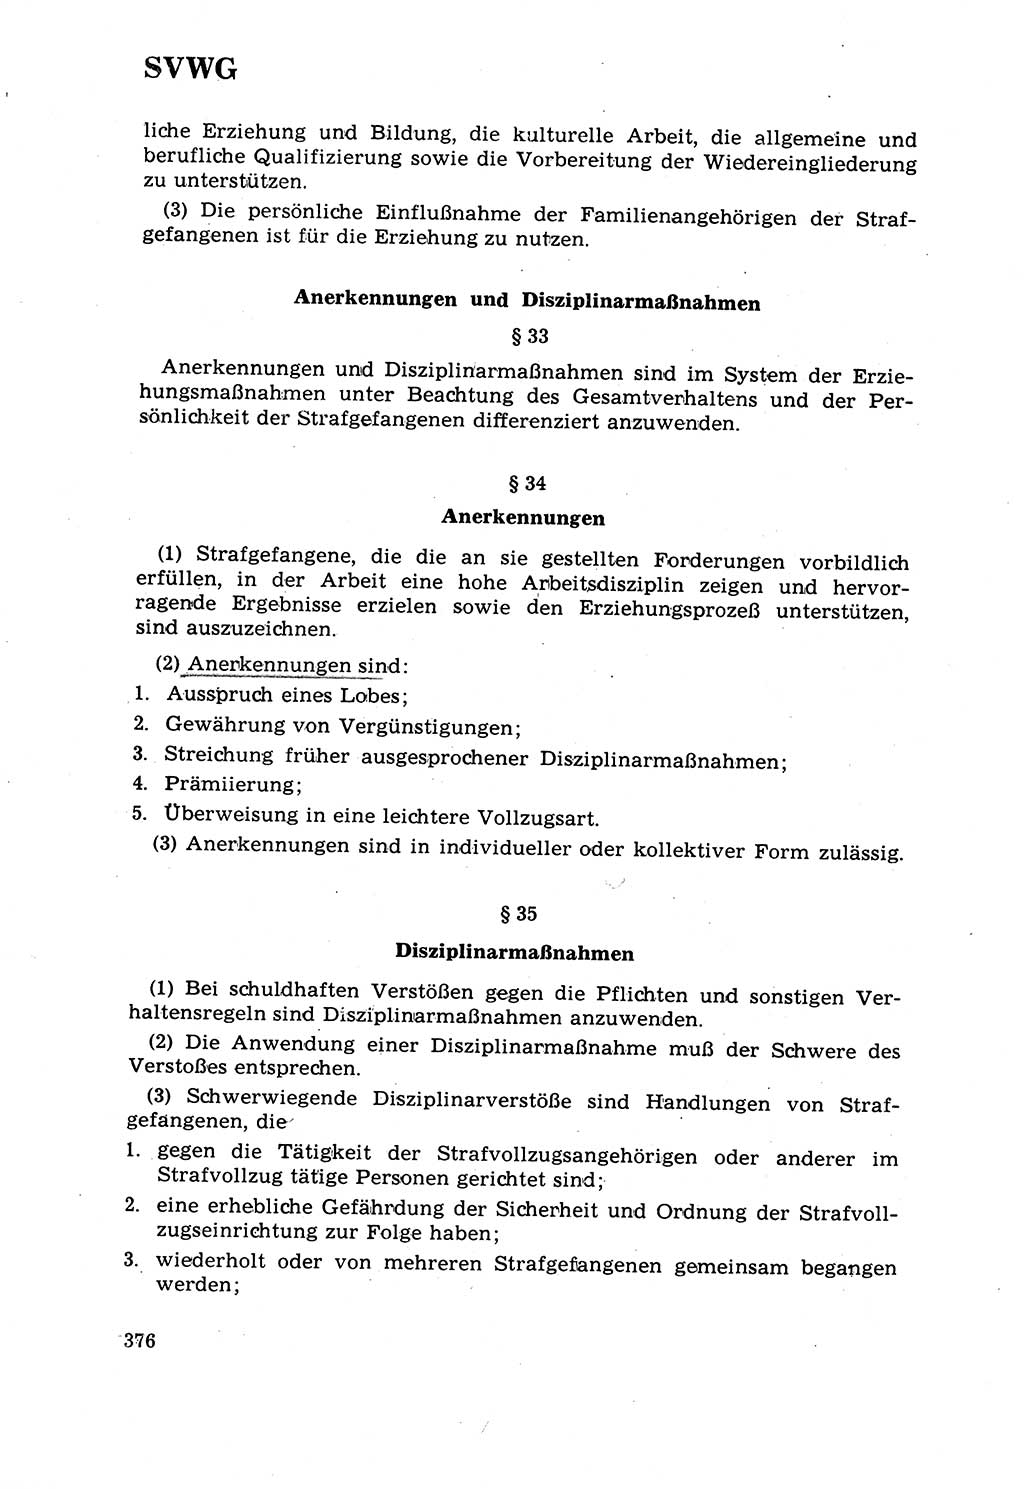 Strafrecht [Deutsche Demokratische Republik (DDR)] 1968, Seite 376 (Strafr. DDR 1968, S. 376)